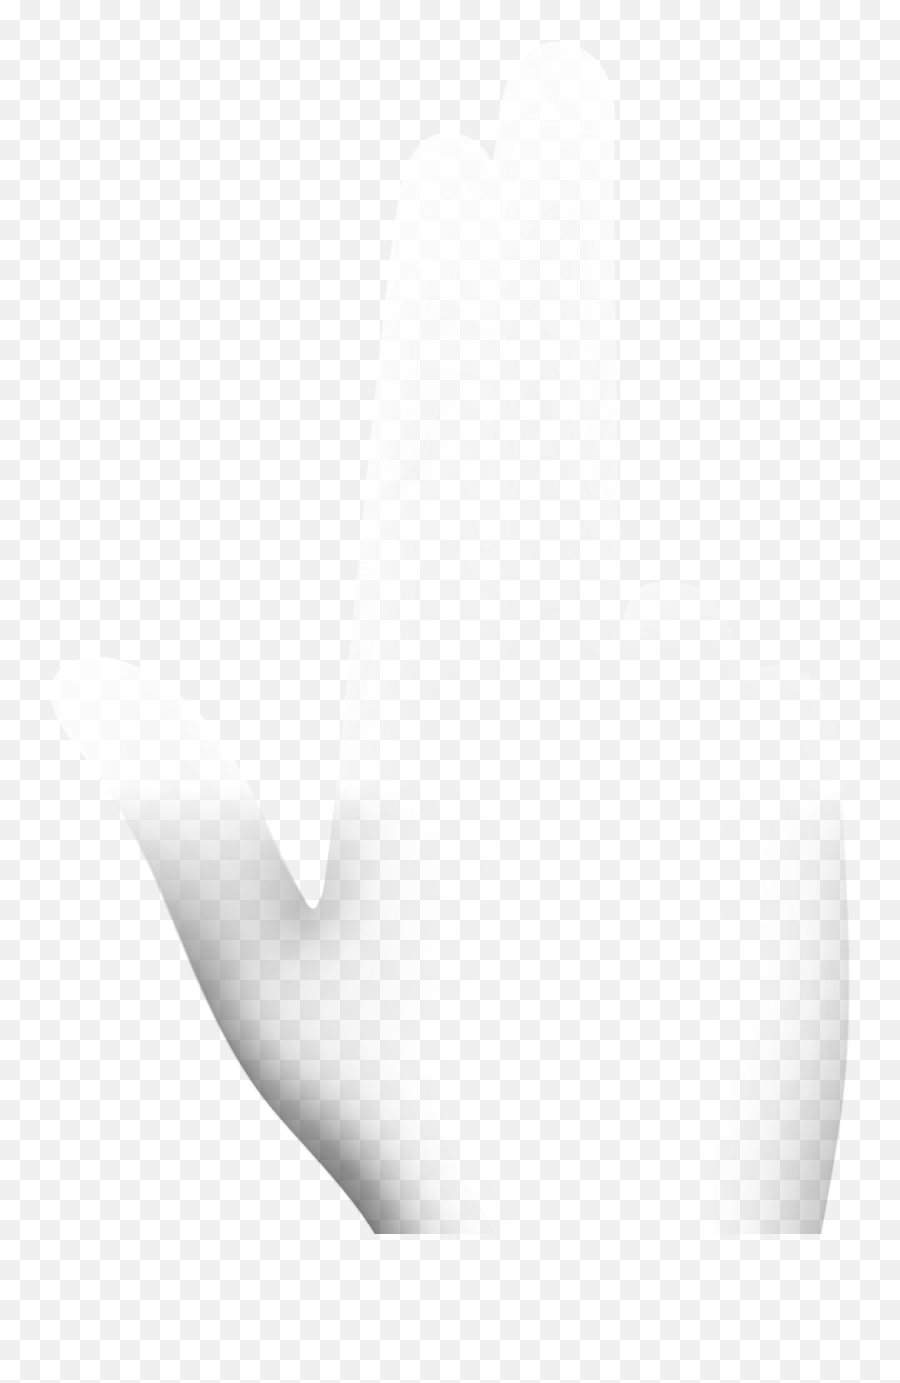 Semplice Mockup Hands For Your Designs Emoji,Emotion Fingers